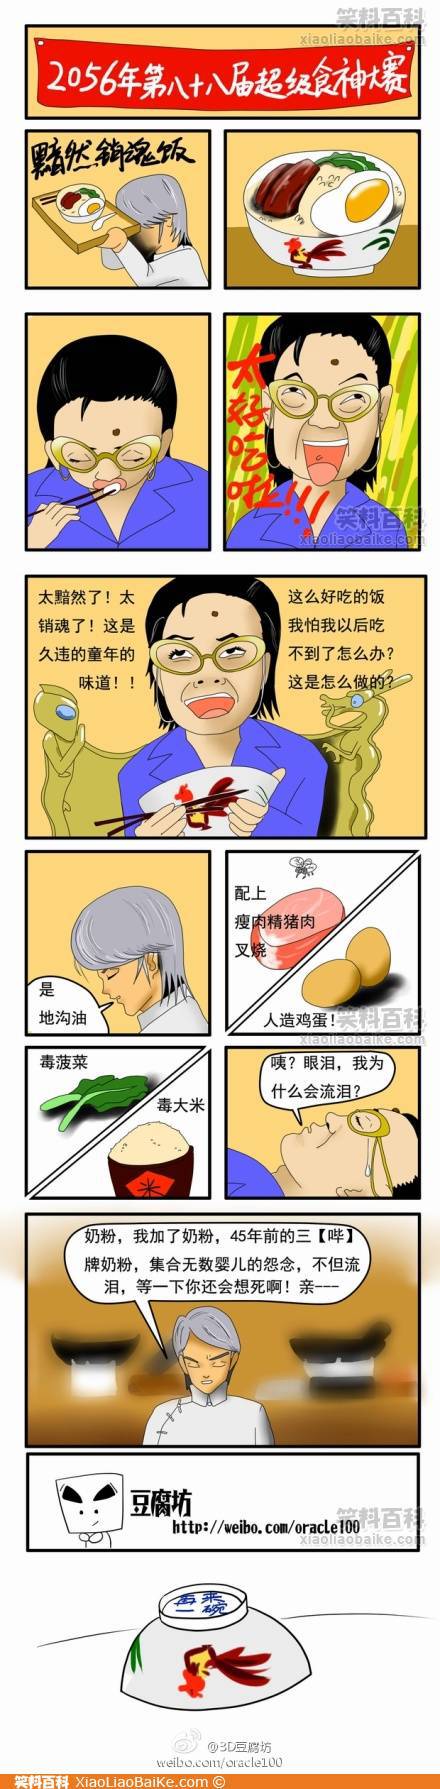 邪恶漫画爆笑囧图第76刊：悲剧的结果